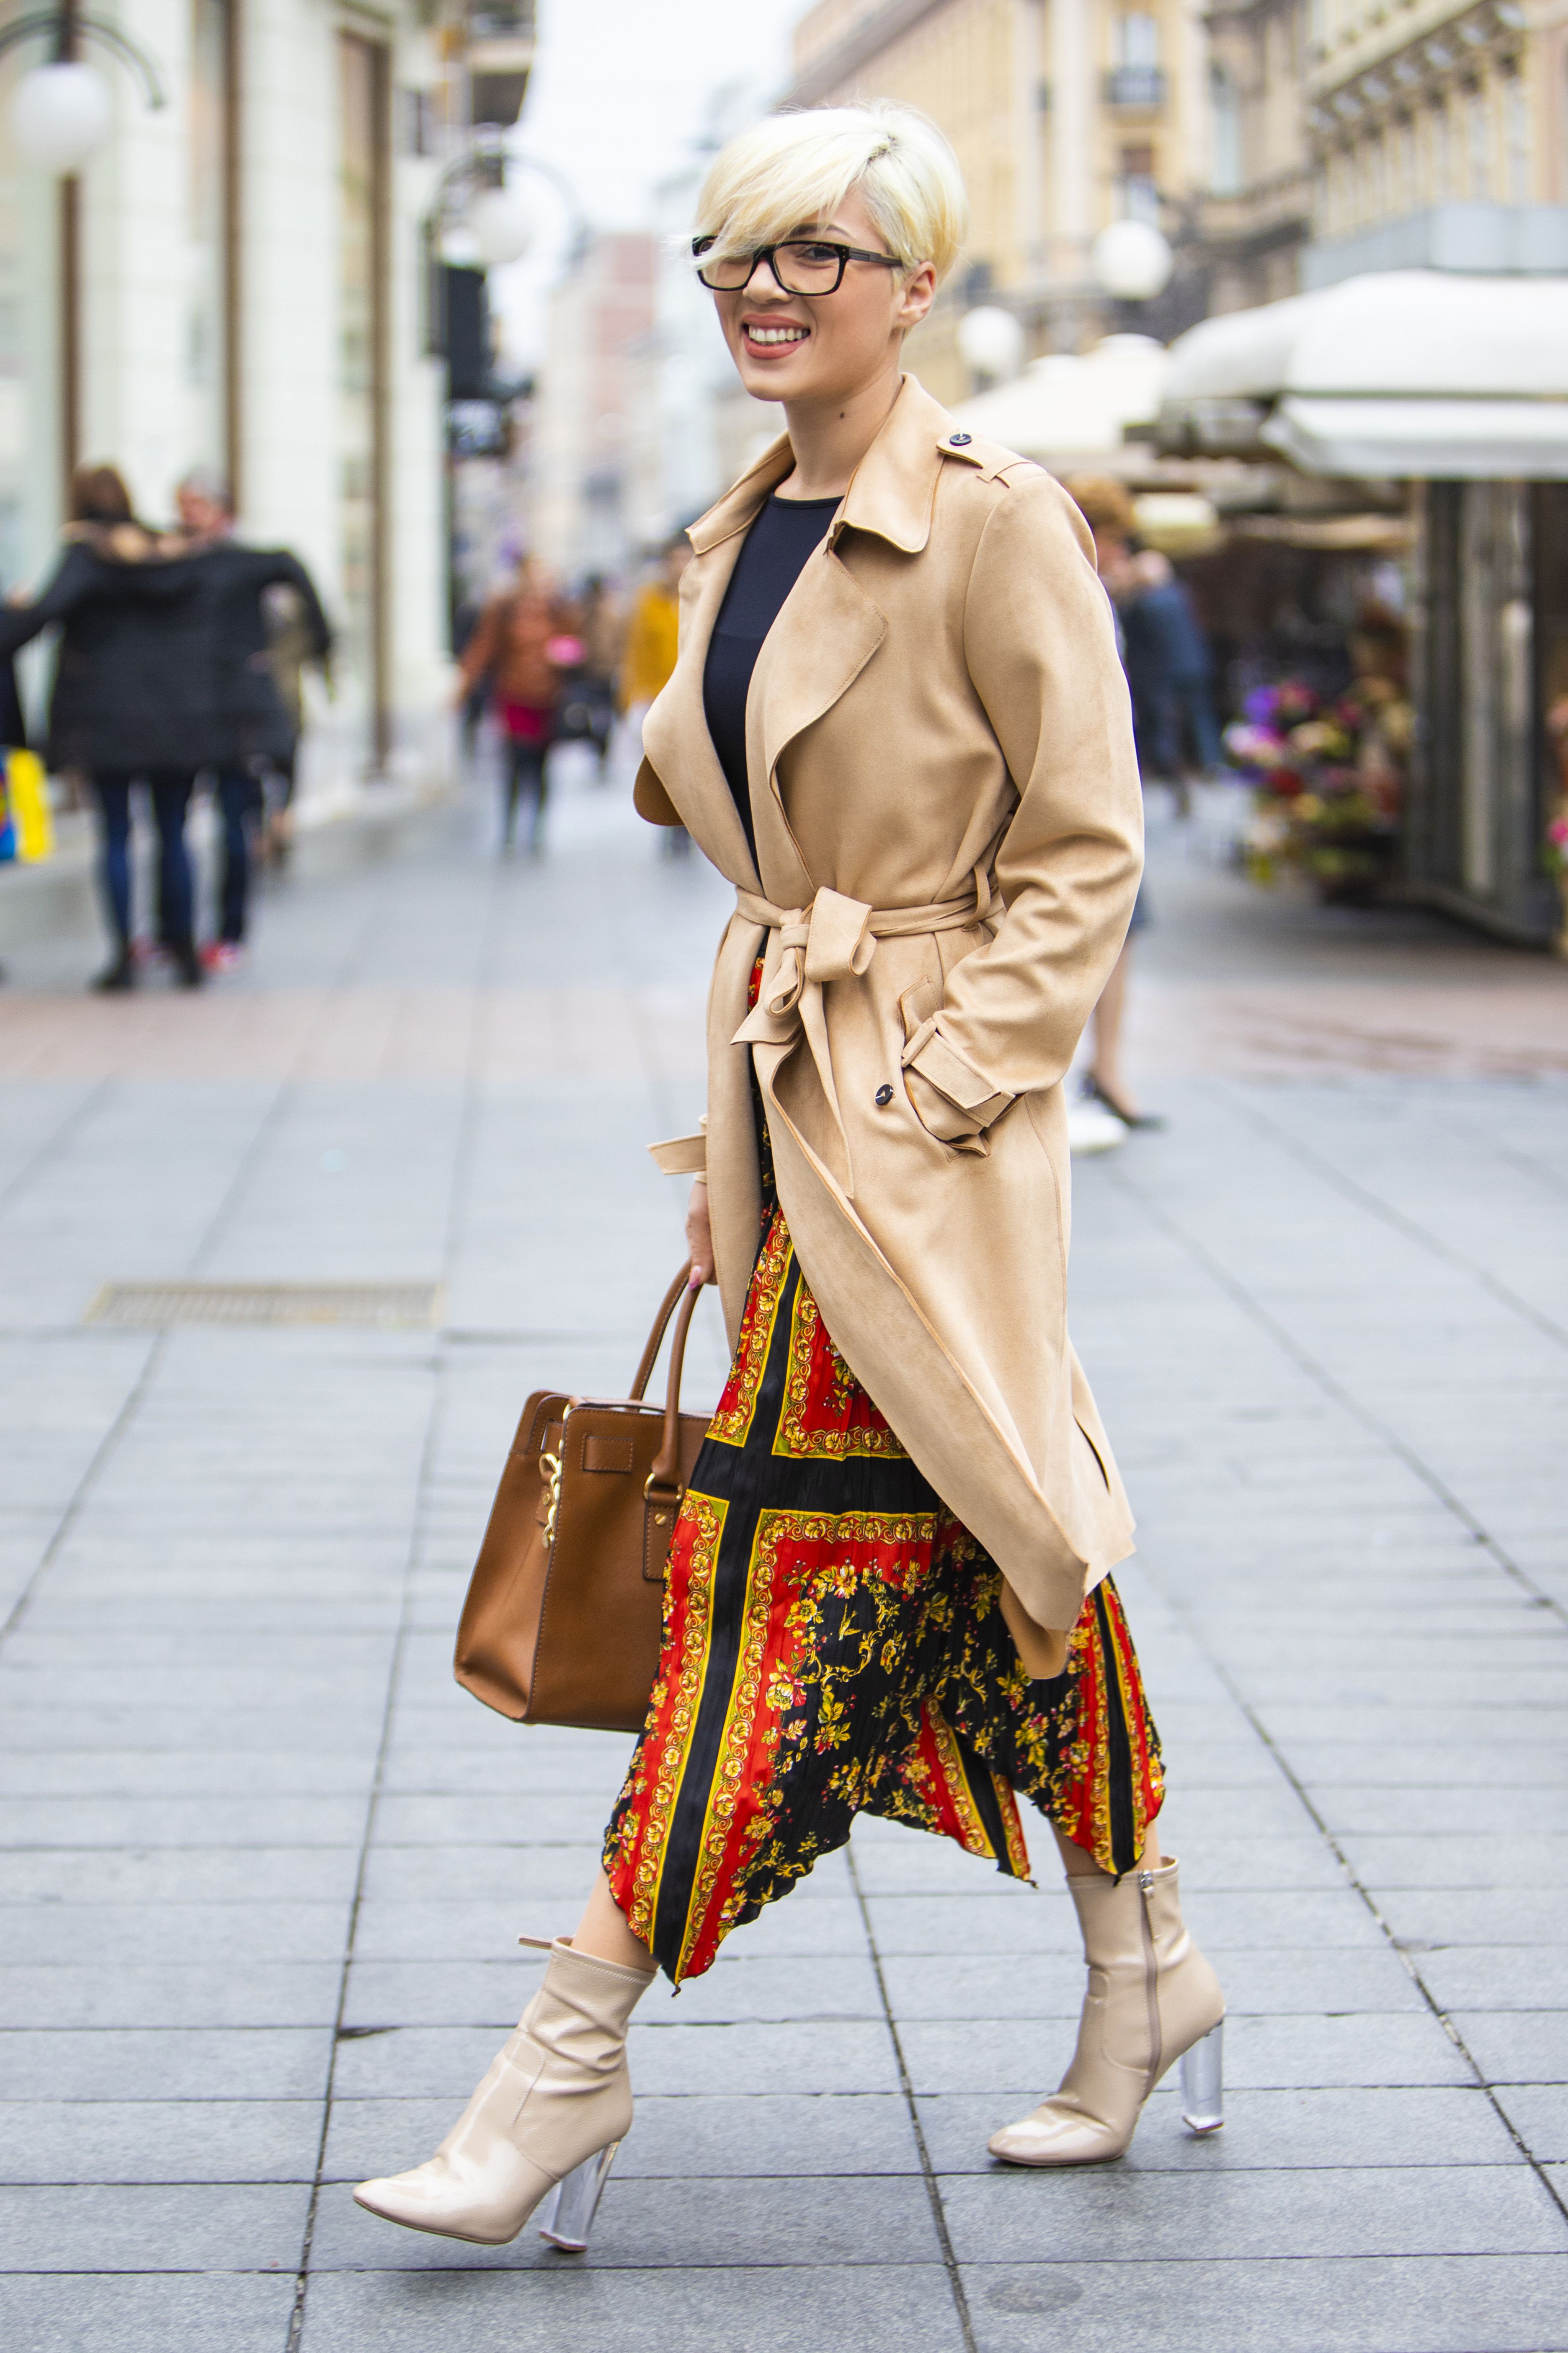 Atraktivna Dalmatinka sa špice: "Često se dogodi da kupim nešto trendi, prvo mi se rugaju, a kasnije i oni nose slično"